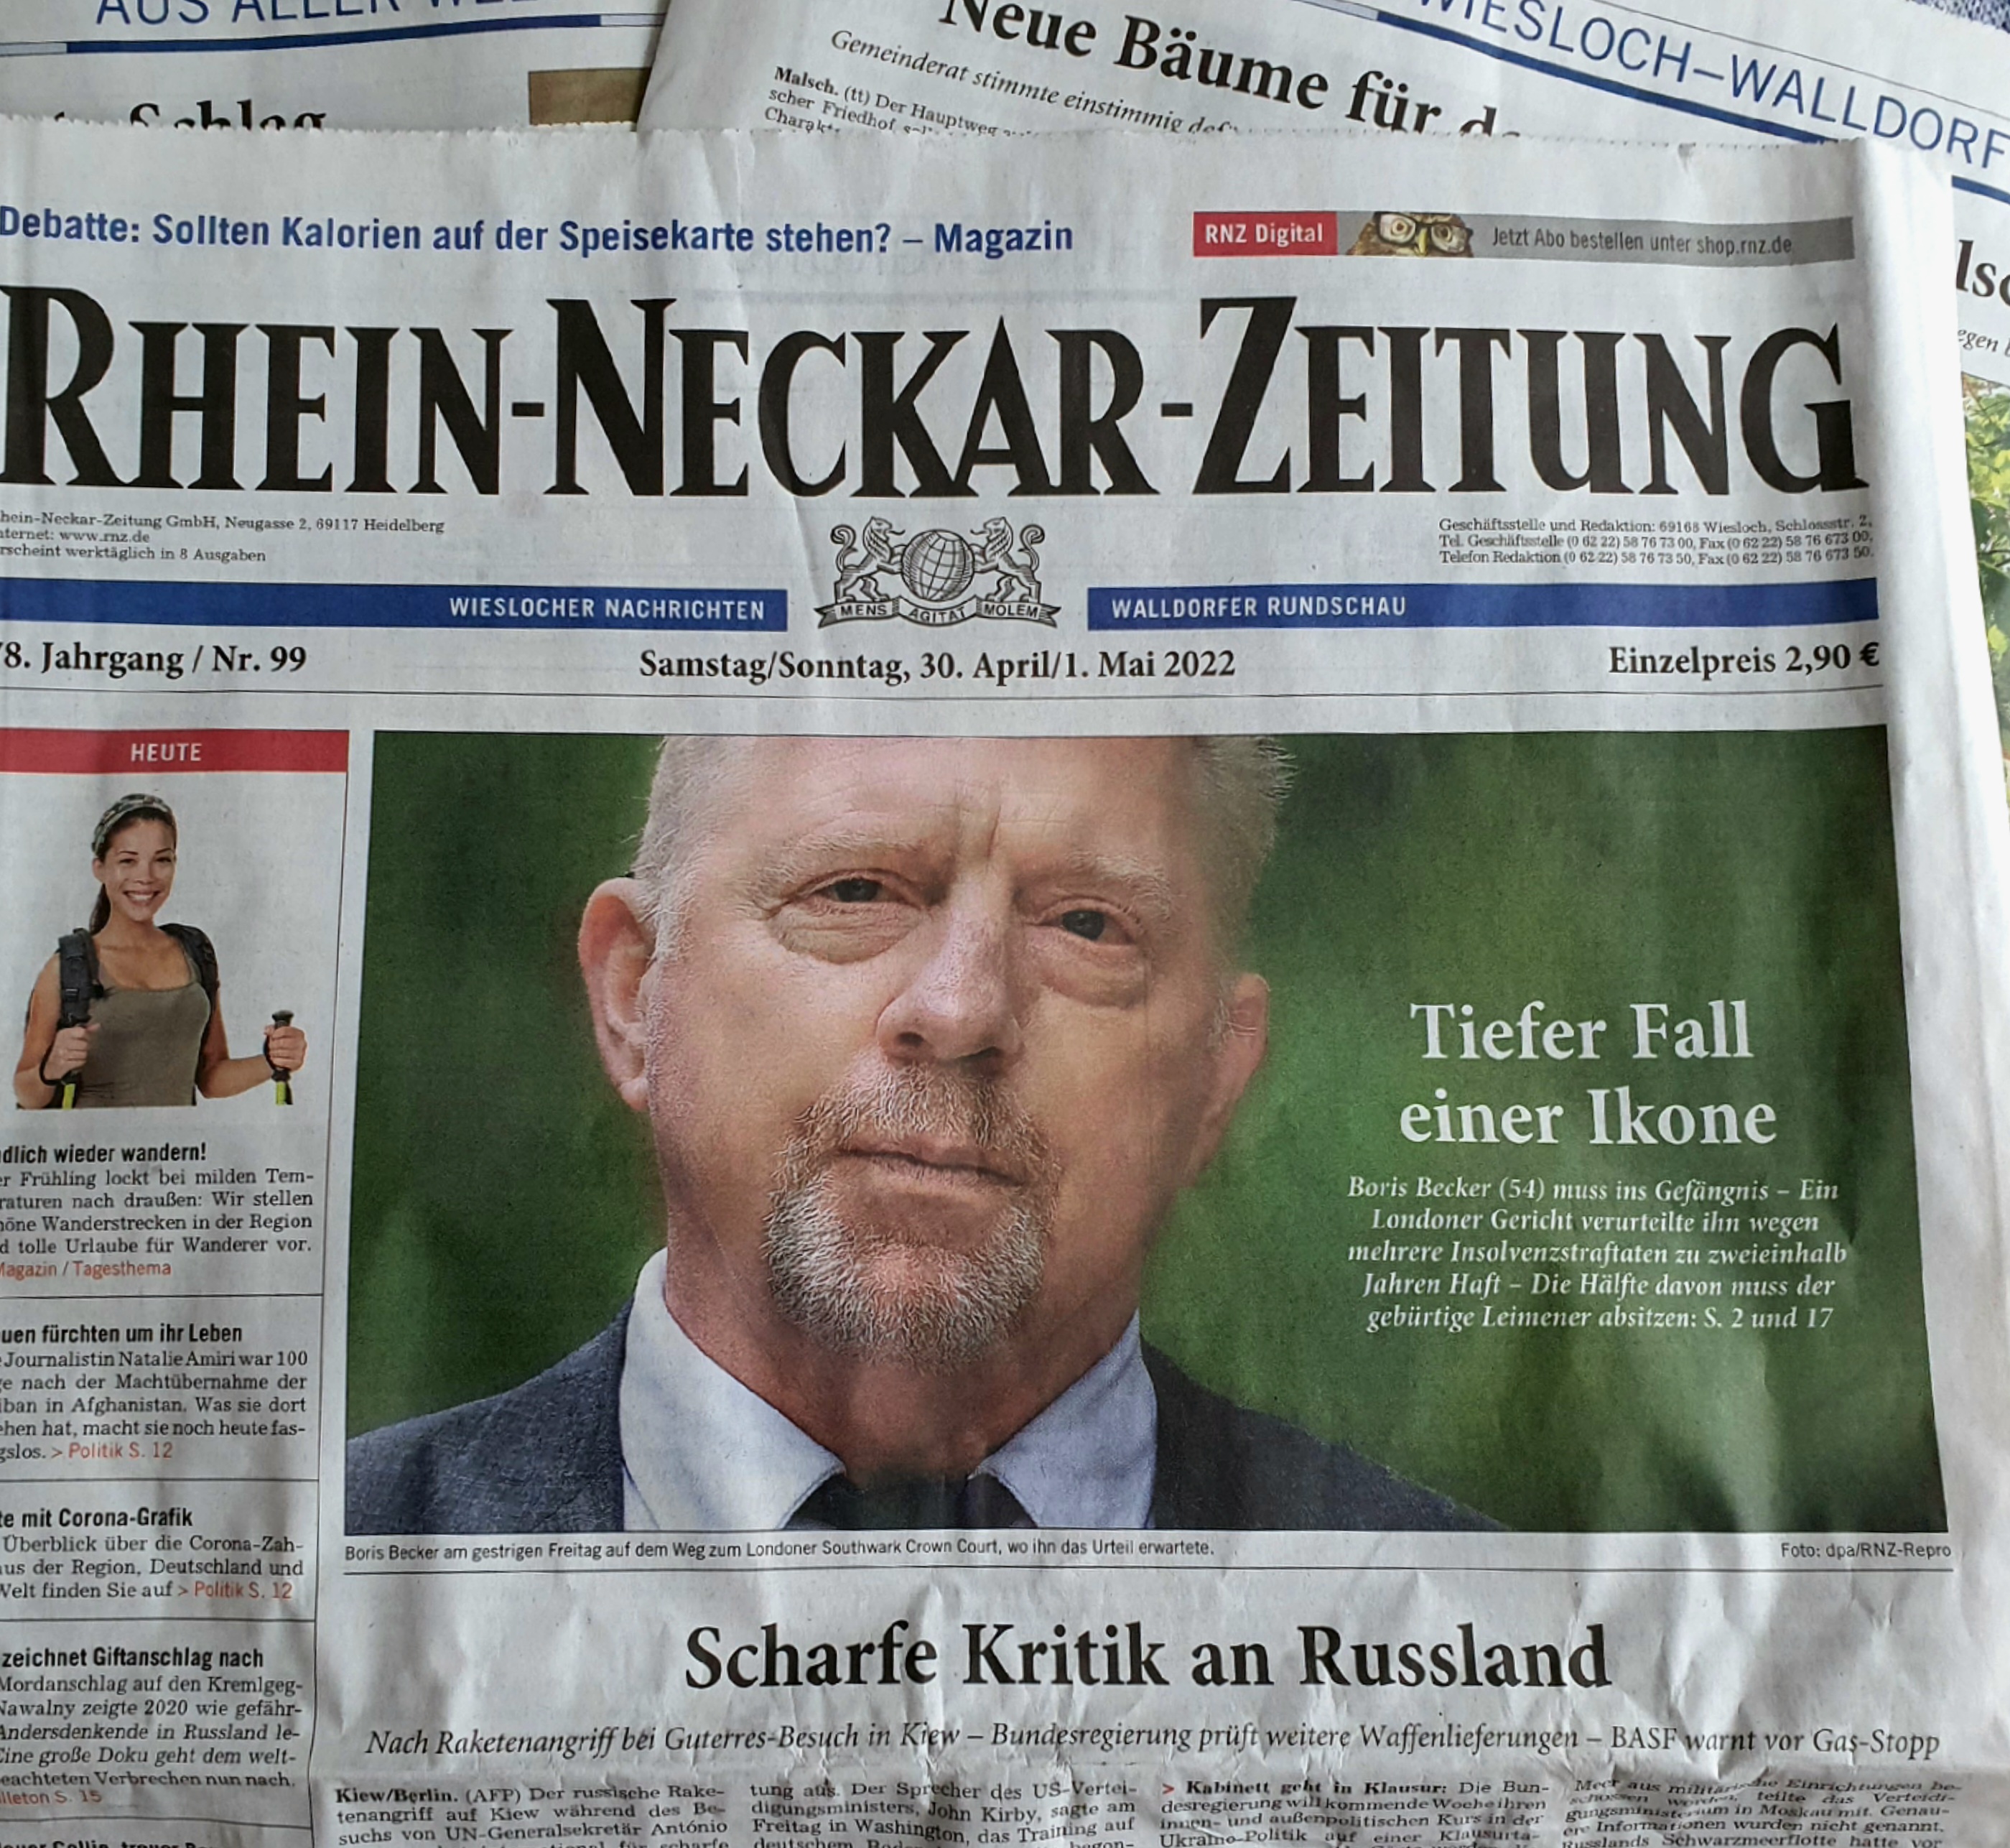 Rhein-Neckar-Zeitung im Mai 2022 | Foto: Dr. Clemens Kriesel